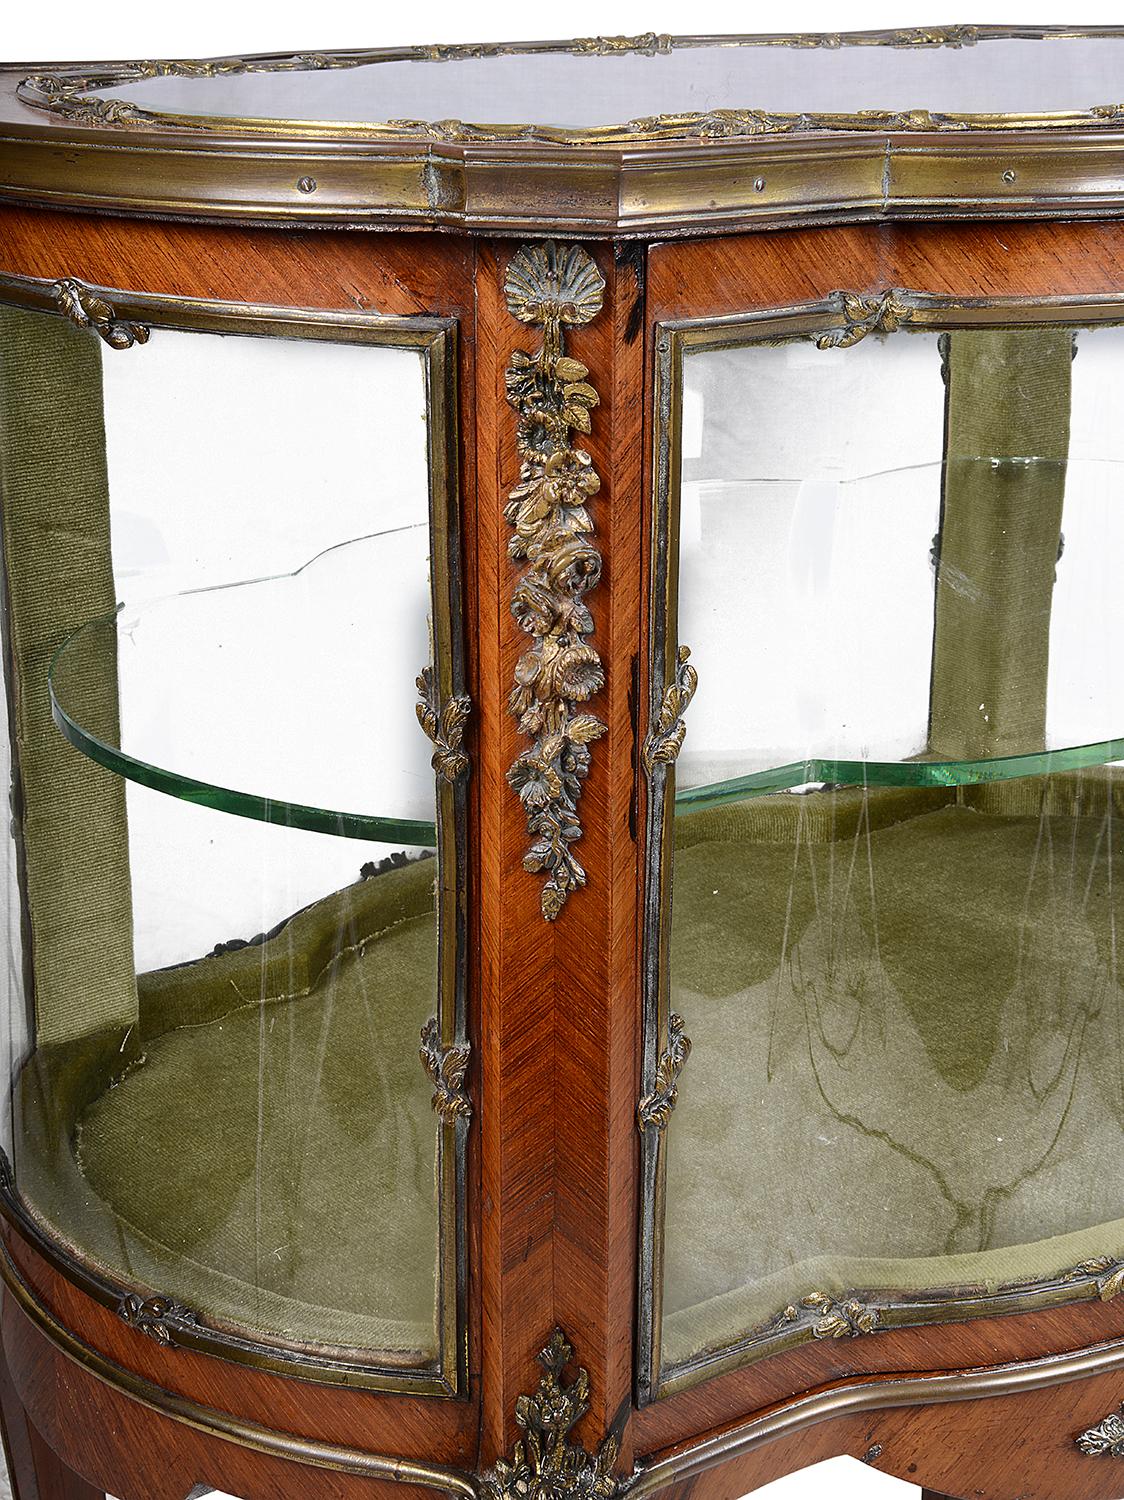 Eine sehr gute Qualität des späten 19. Jahrhunderts Französisch Ormolu montiert frei stehenden Vitrine. Mit gewölbtem Glas an den Enden, einer zu öffnenden Tür mit einem Glasboden darin. Klassische florale und folierte vergoldete Ormolu-Beschläge